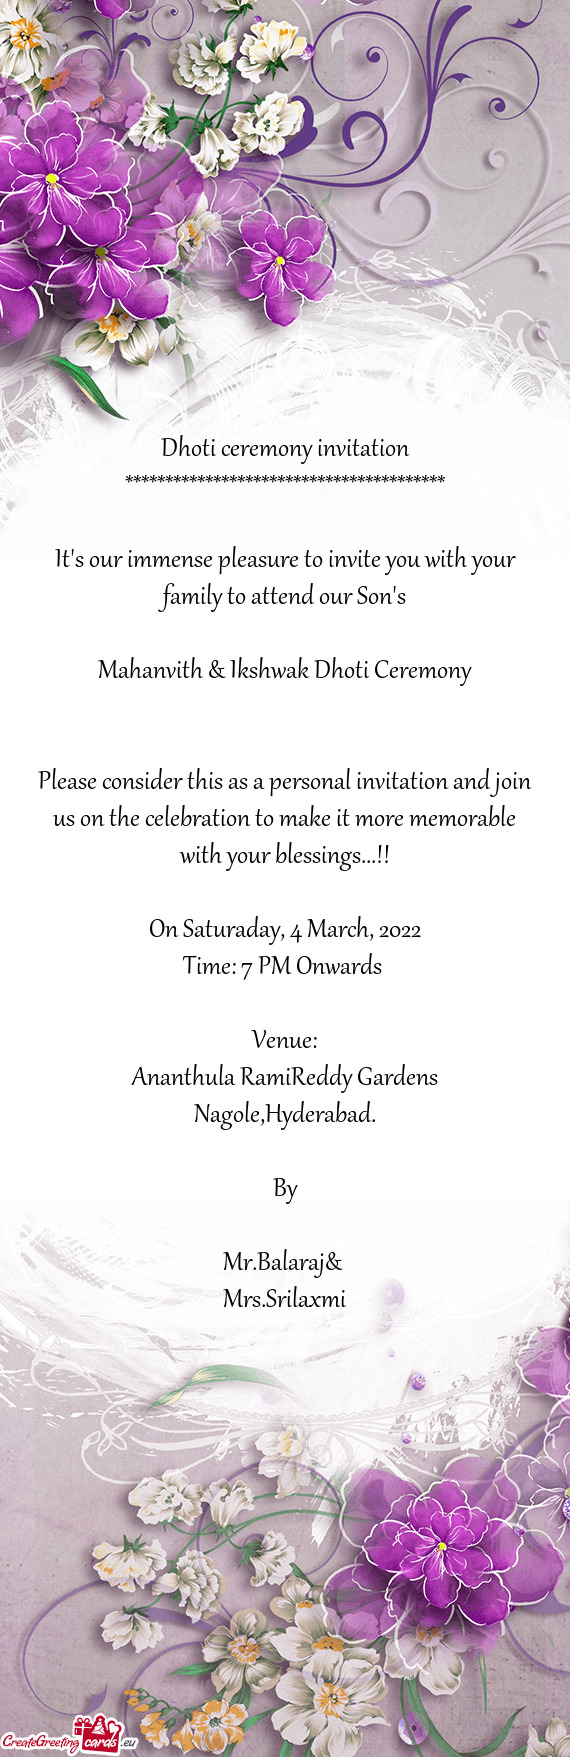 Mahanvith & Ikshwak Dhoti Ceremony